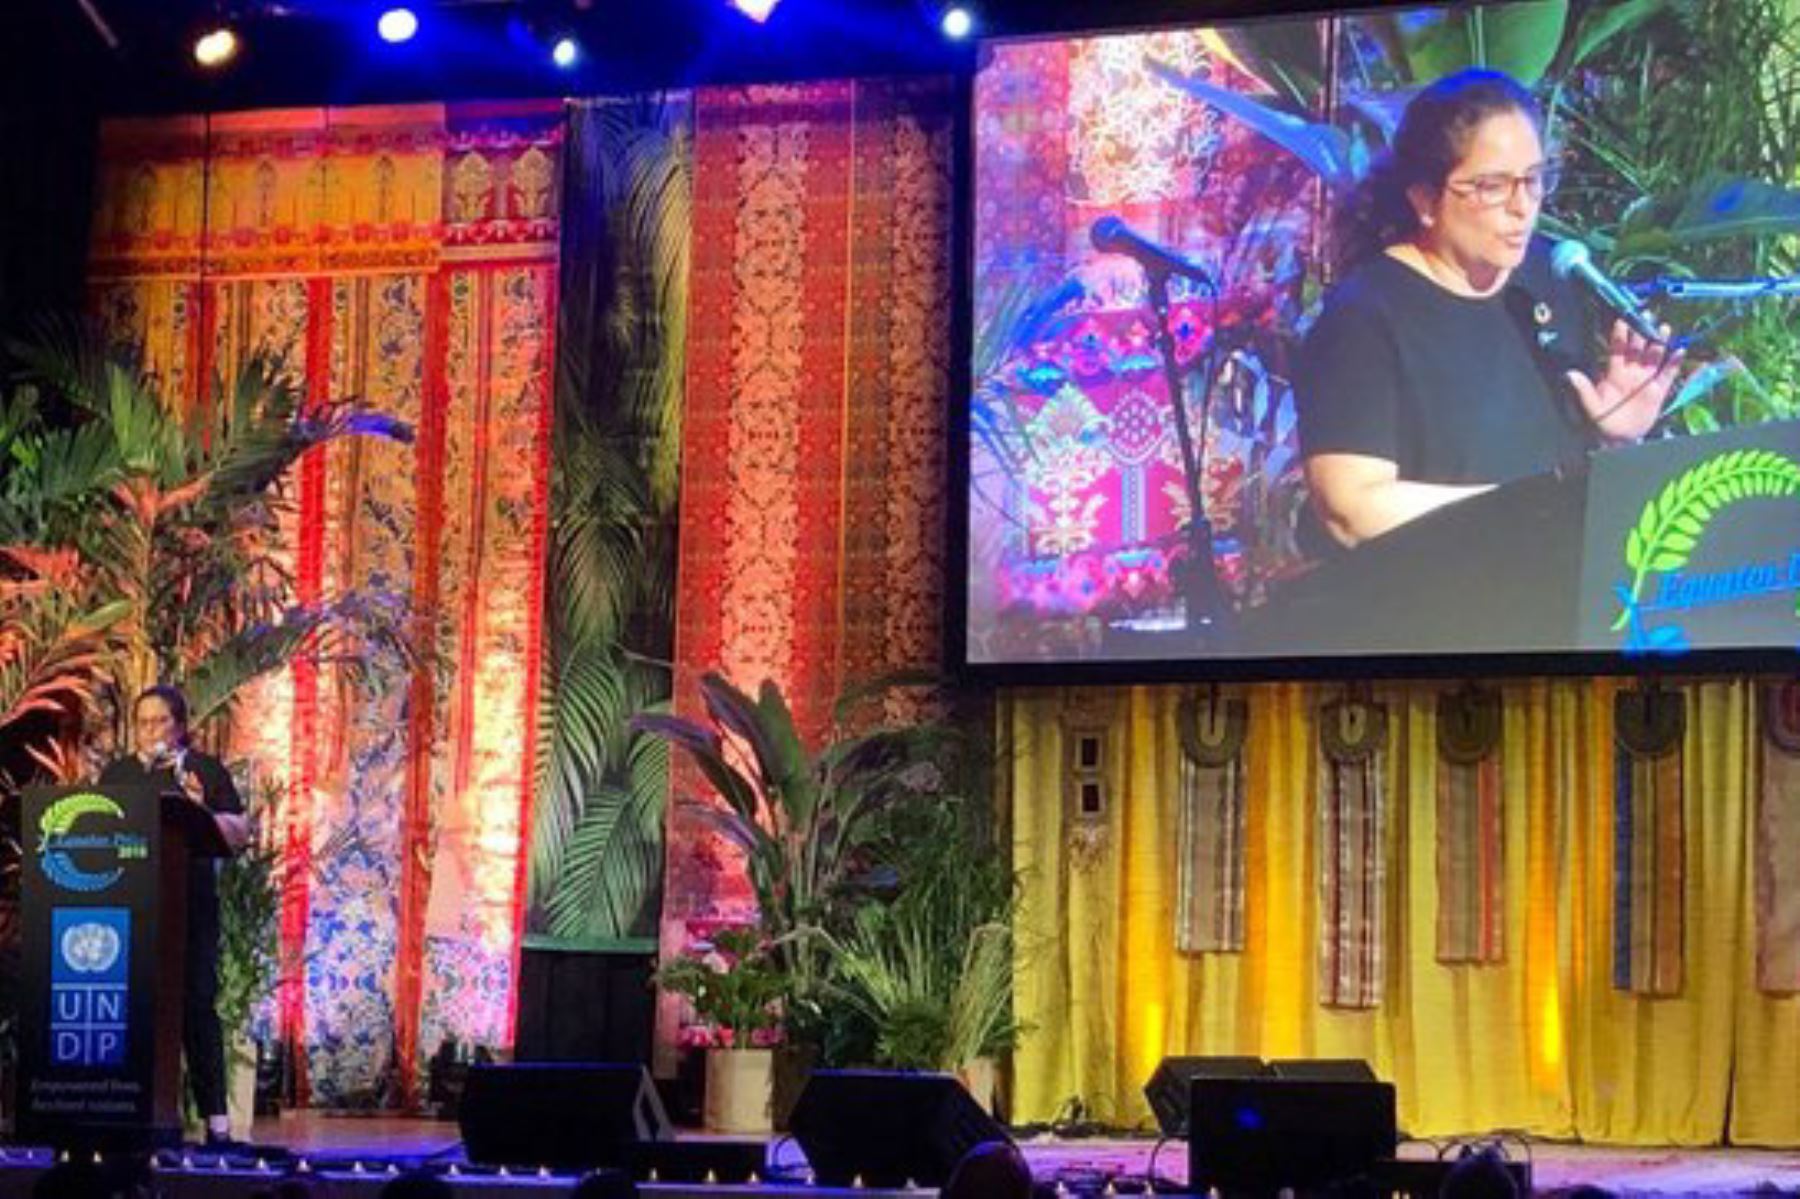 Lecciones de comunidades amazónicas deben replicarse para proteger bosques y biodiversidad, destacó la ministra del Ambiente, Lucía Ruíz, durante la ceremonia de distinción a los ganadores del Premio Ecuatorial 2019, realizado en Nueva York, como parte de la Cumbre de Acción Climática.